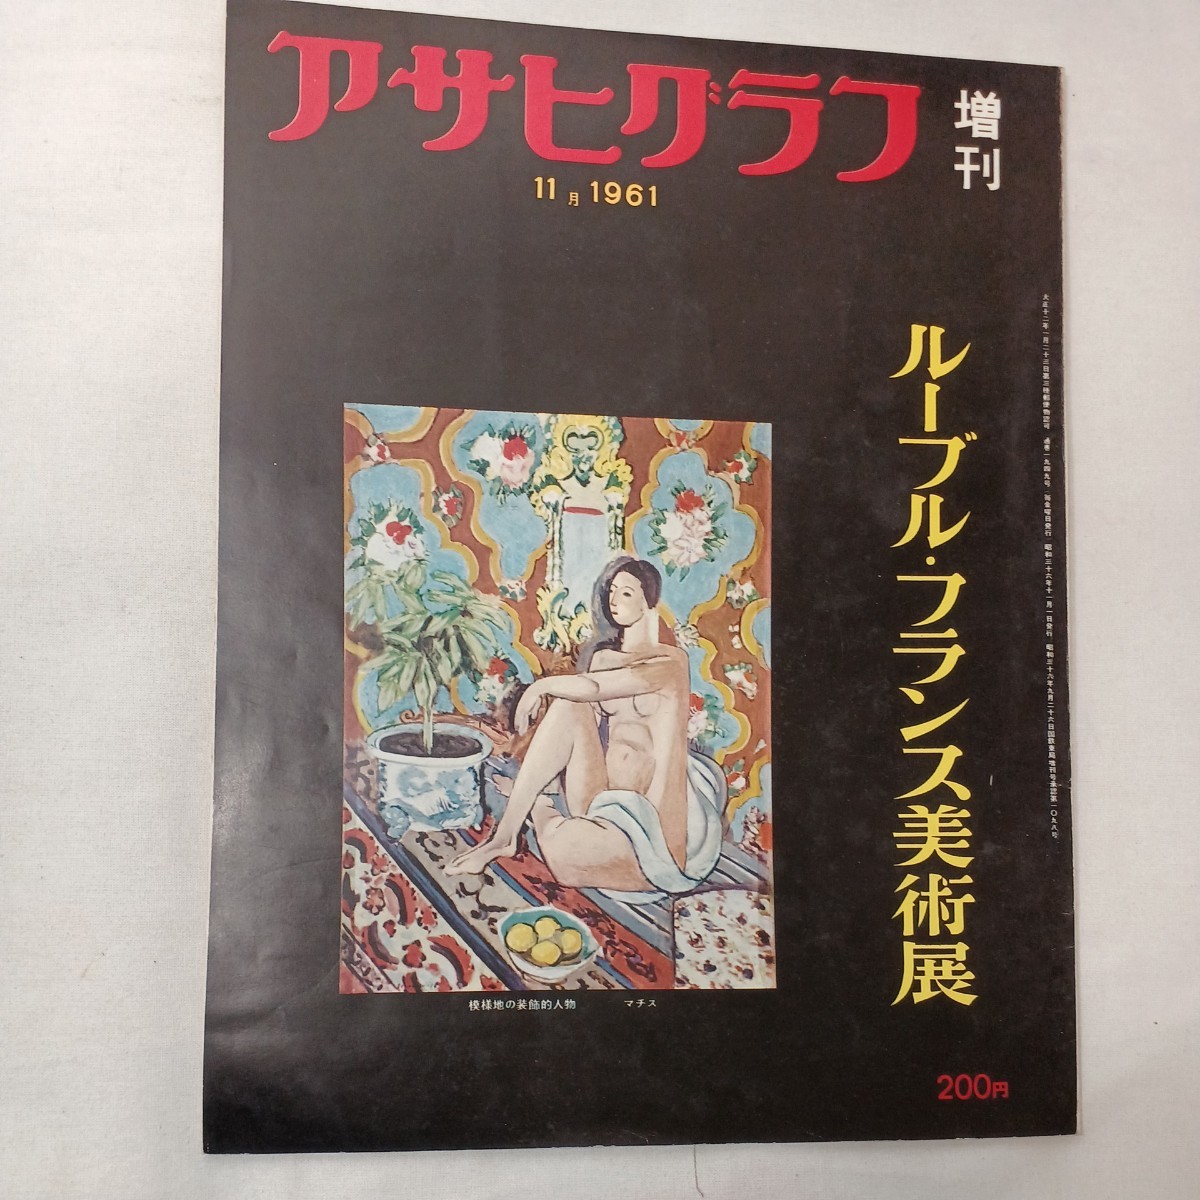 zaa-ma06♪ Asahi Graph Louvre Francia Exposición de arte 1961/11/25 Asahi Shimbun Año de publicación 1961.11, Cuadro, Libro de arte, Recopilación, Libro de arte